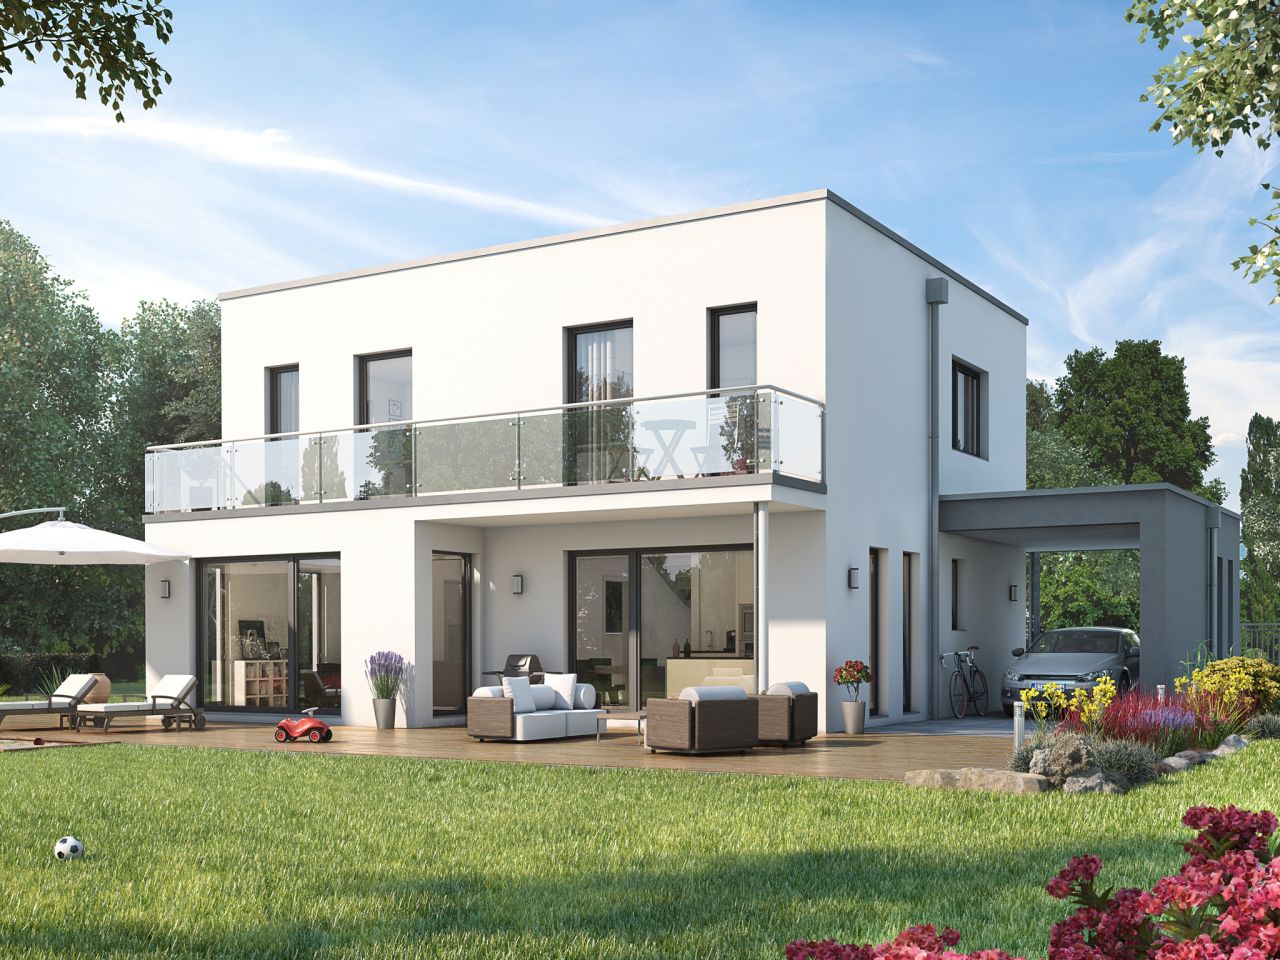 Dein helles & offenes Wohnkonzept in modernem Einfamilienhaus in Gammertingen! Inkl. Grundstück 